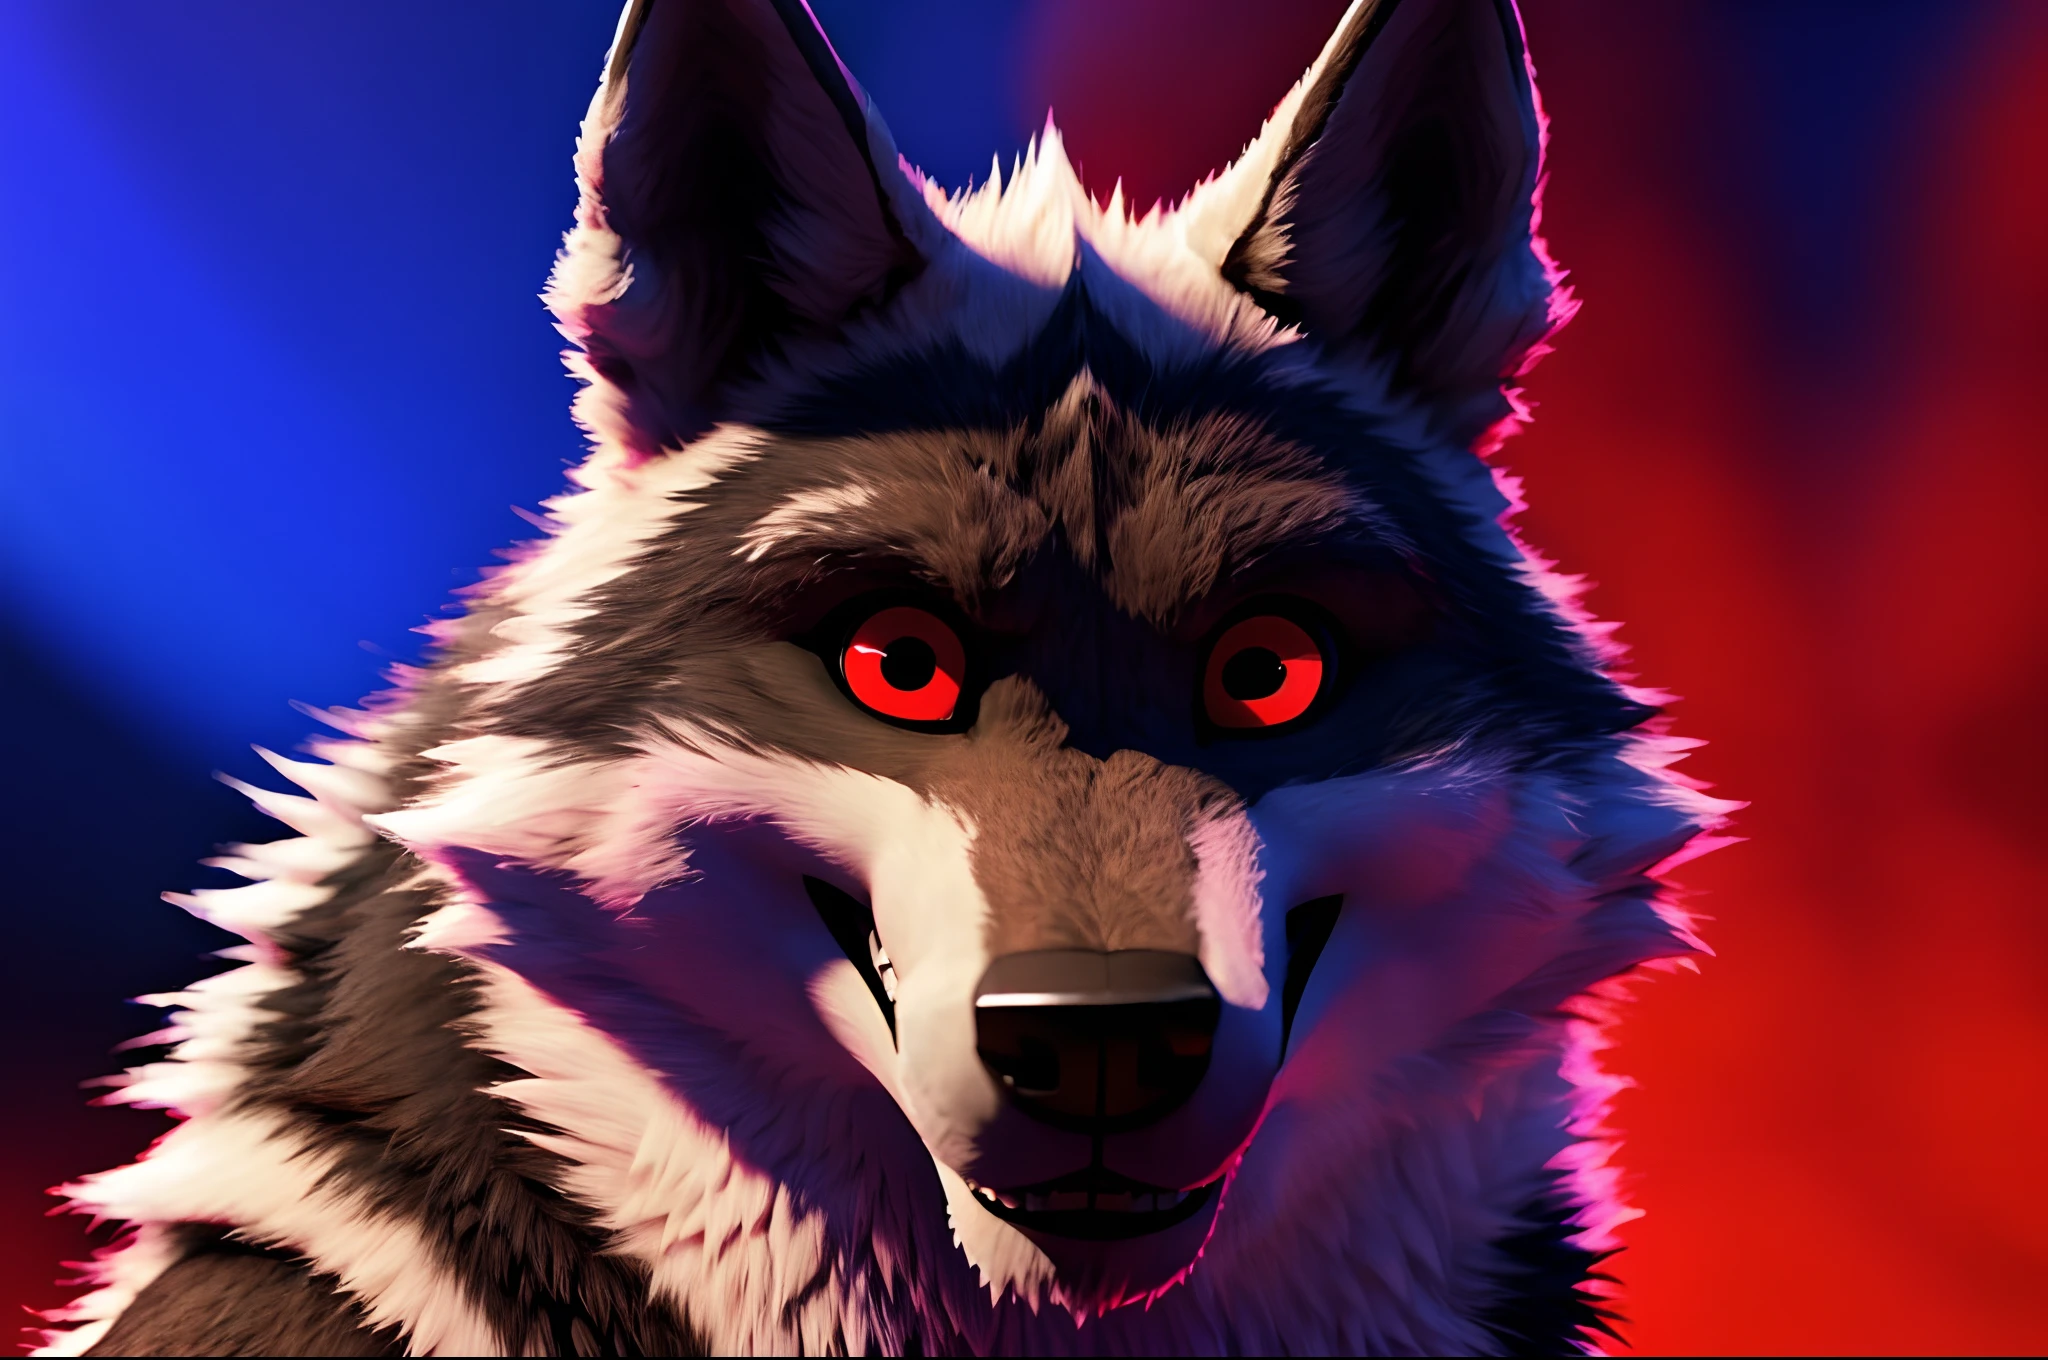 "Photo de couverture sur Facebook: Loup mortel aux yeux rouges fascinants. 3D ULTRA HD 8K."